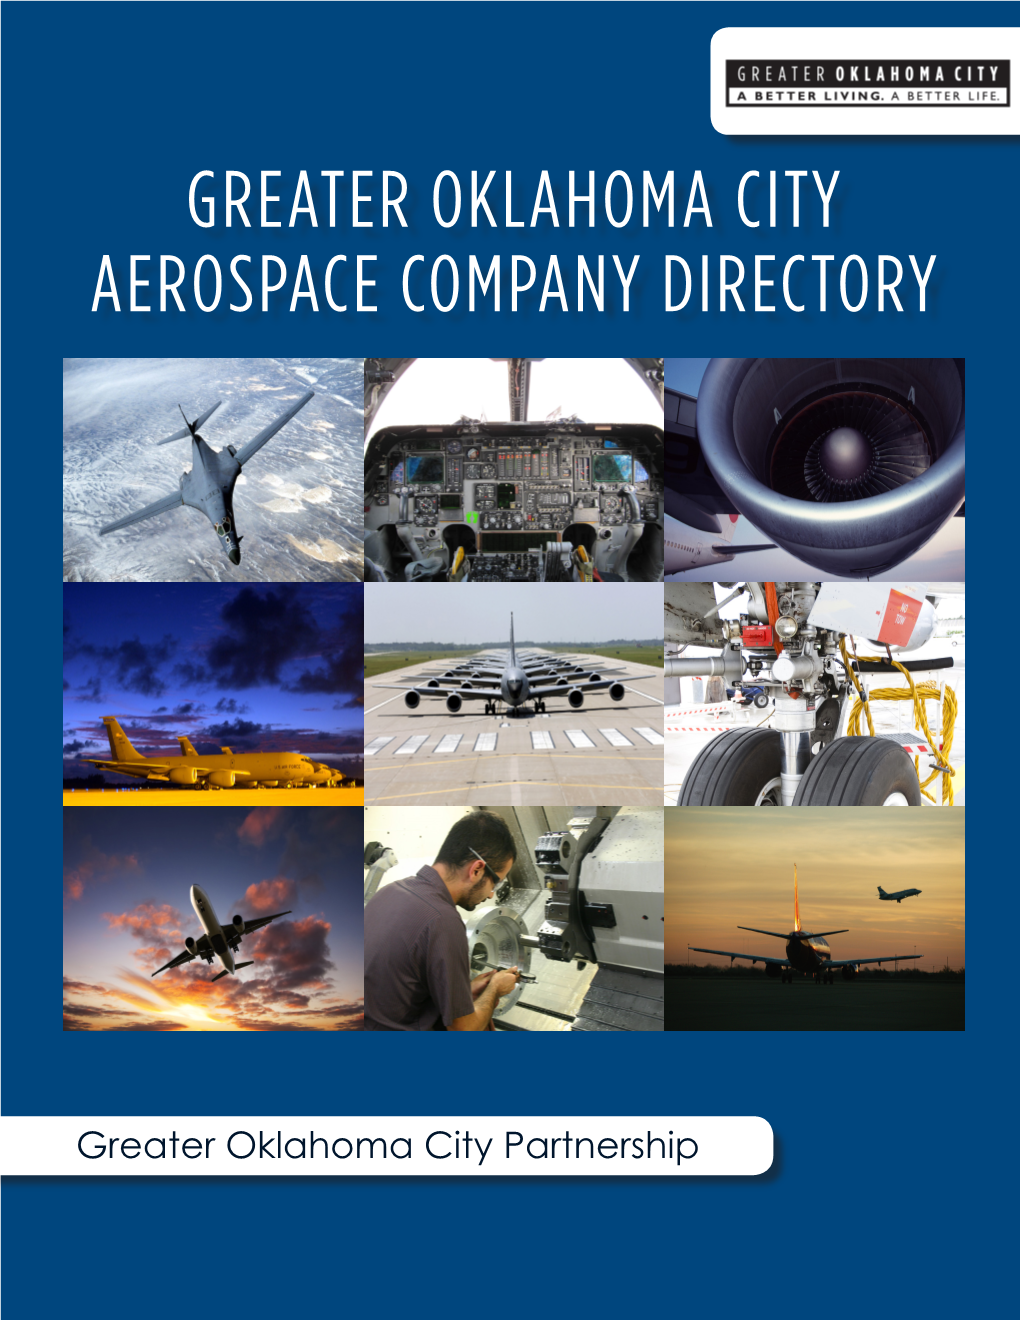 Aerospace Companies in the Greater Oklahoma City Region